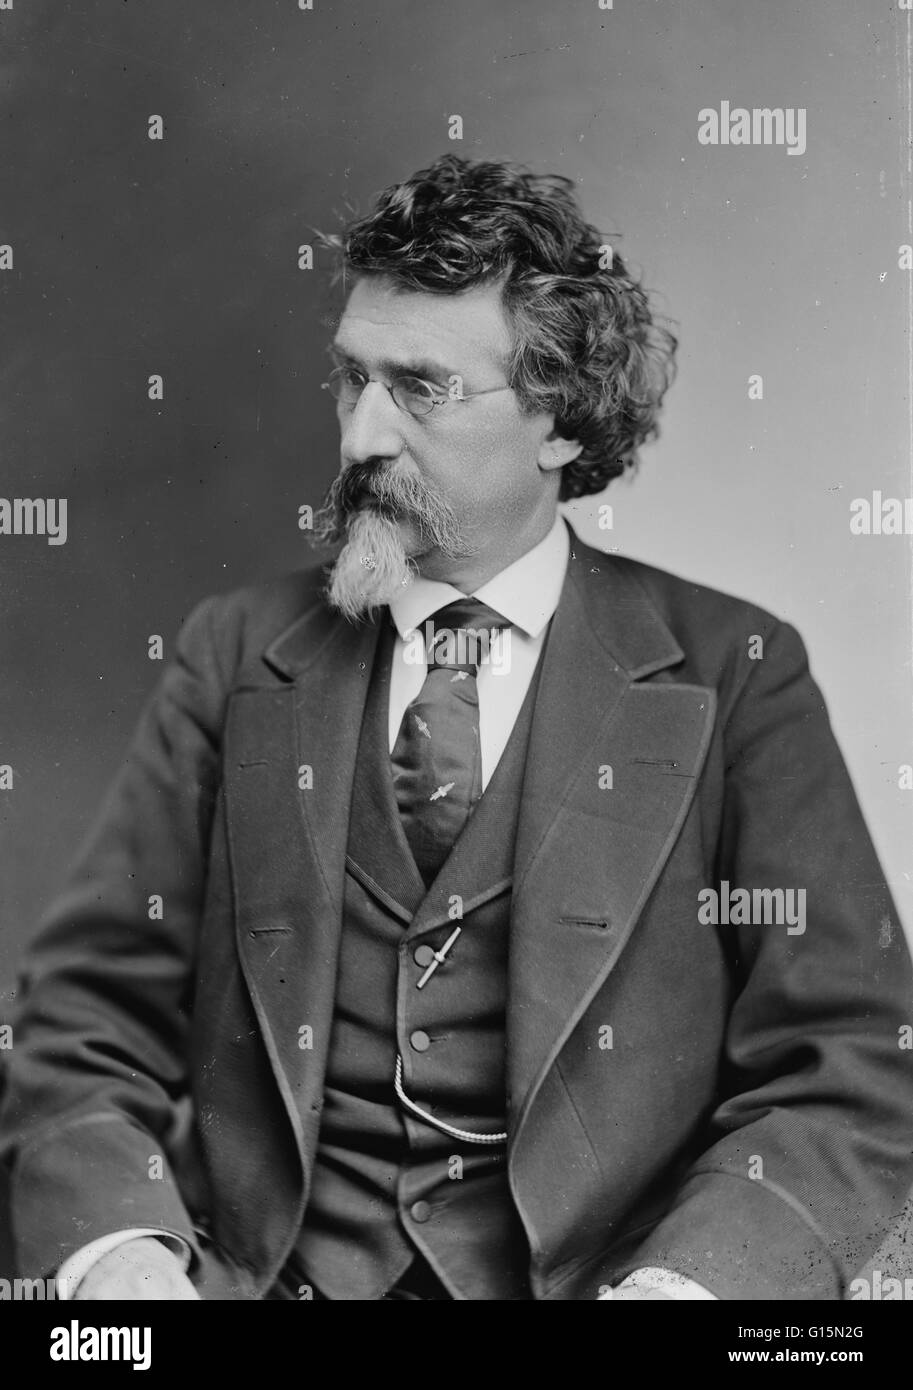 Mathew B. Brady (1822 - 15. Januar 1896) war einer der berühmtesten 19. Jahrhundert amerikanischen Fotografen, am besten bekannt für seine Porträts von Prominenten und seine Dokumentation des amerikanischen Bürgerkrieges. Ihm wird zugeschrieben, der Vater von photojournal Stockfoto